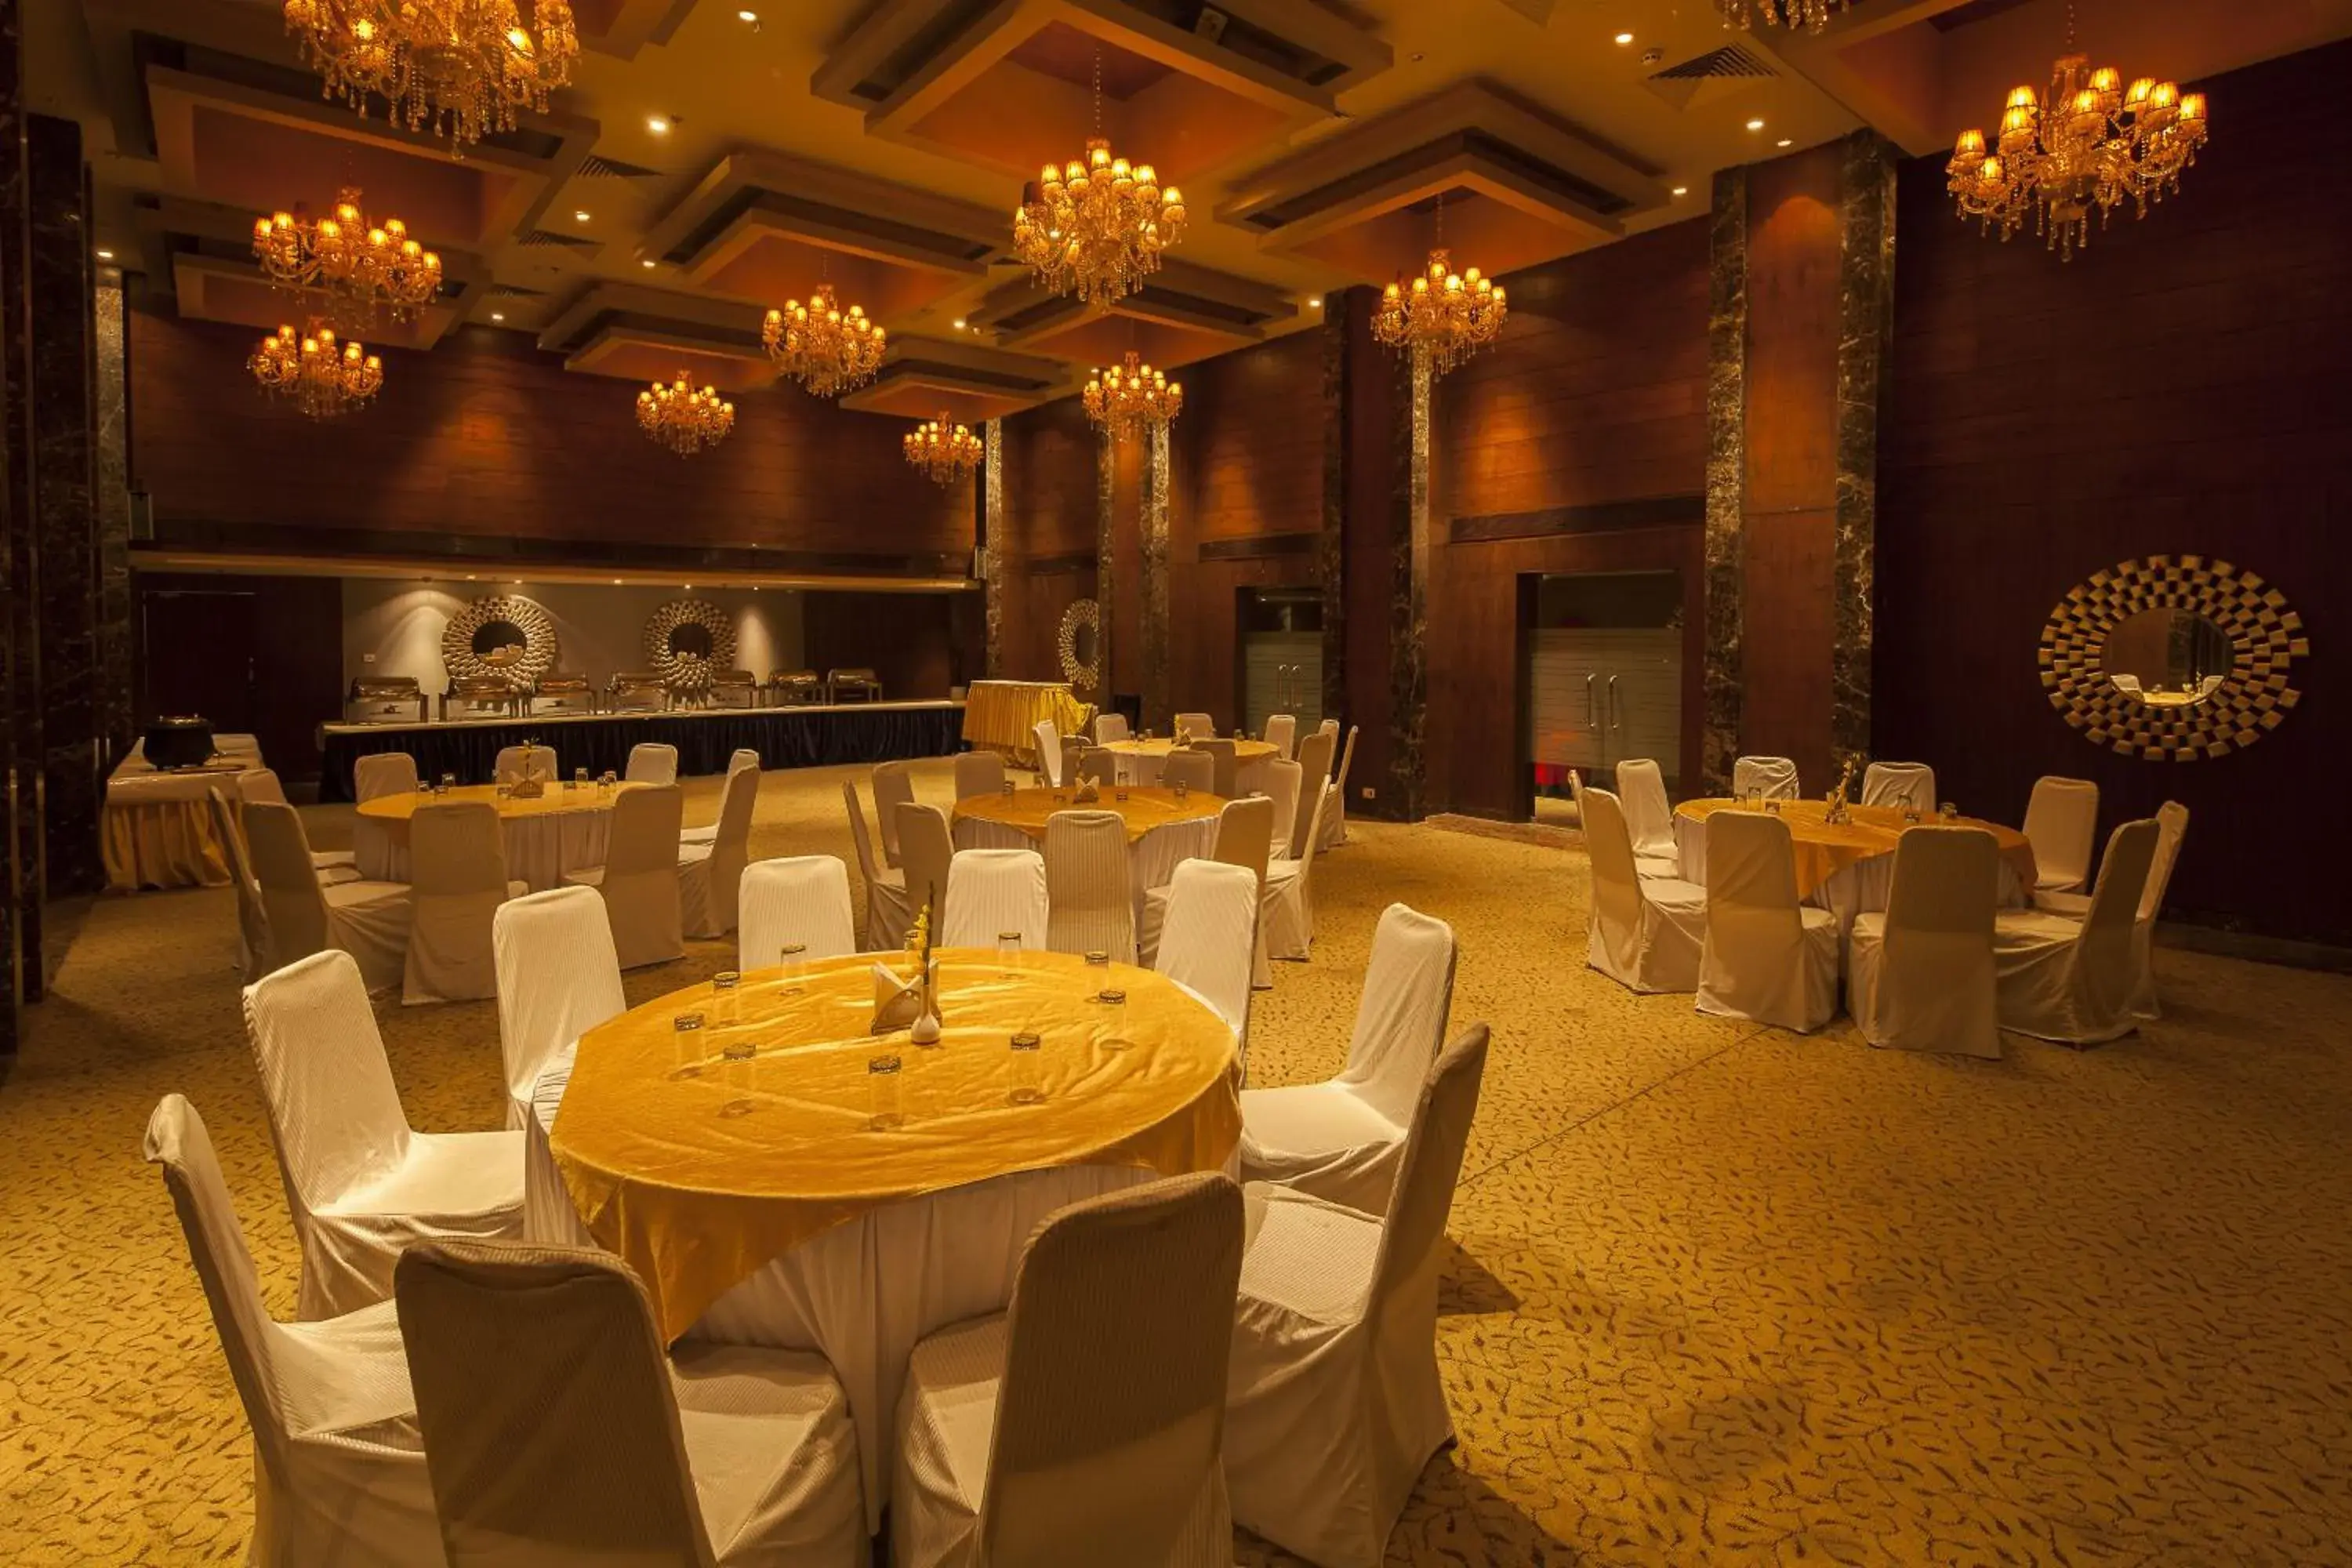 Banquet/Function facilities, Banquet Facilities in Vesta International